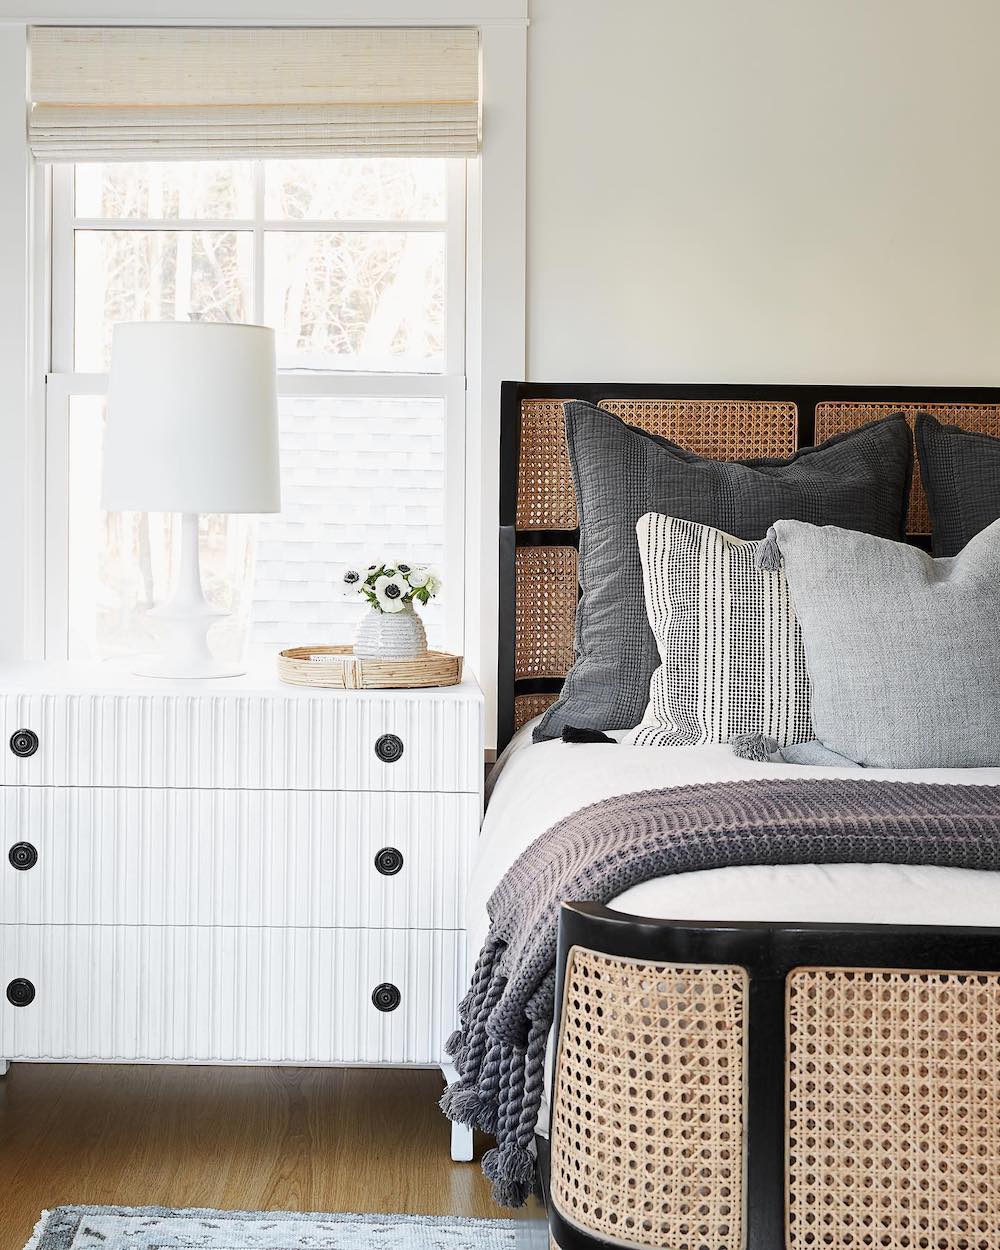 Julia Longchamps handsome bedroom - interior design trends in 2022